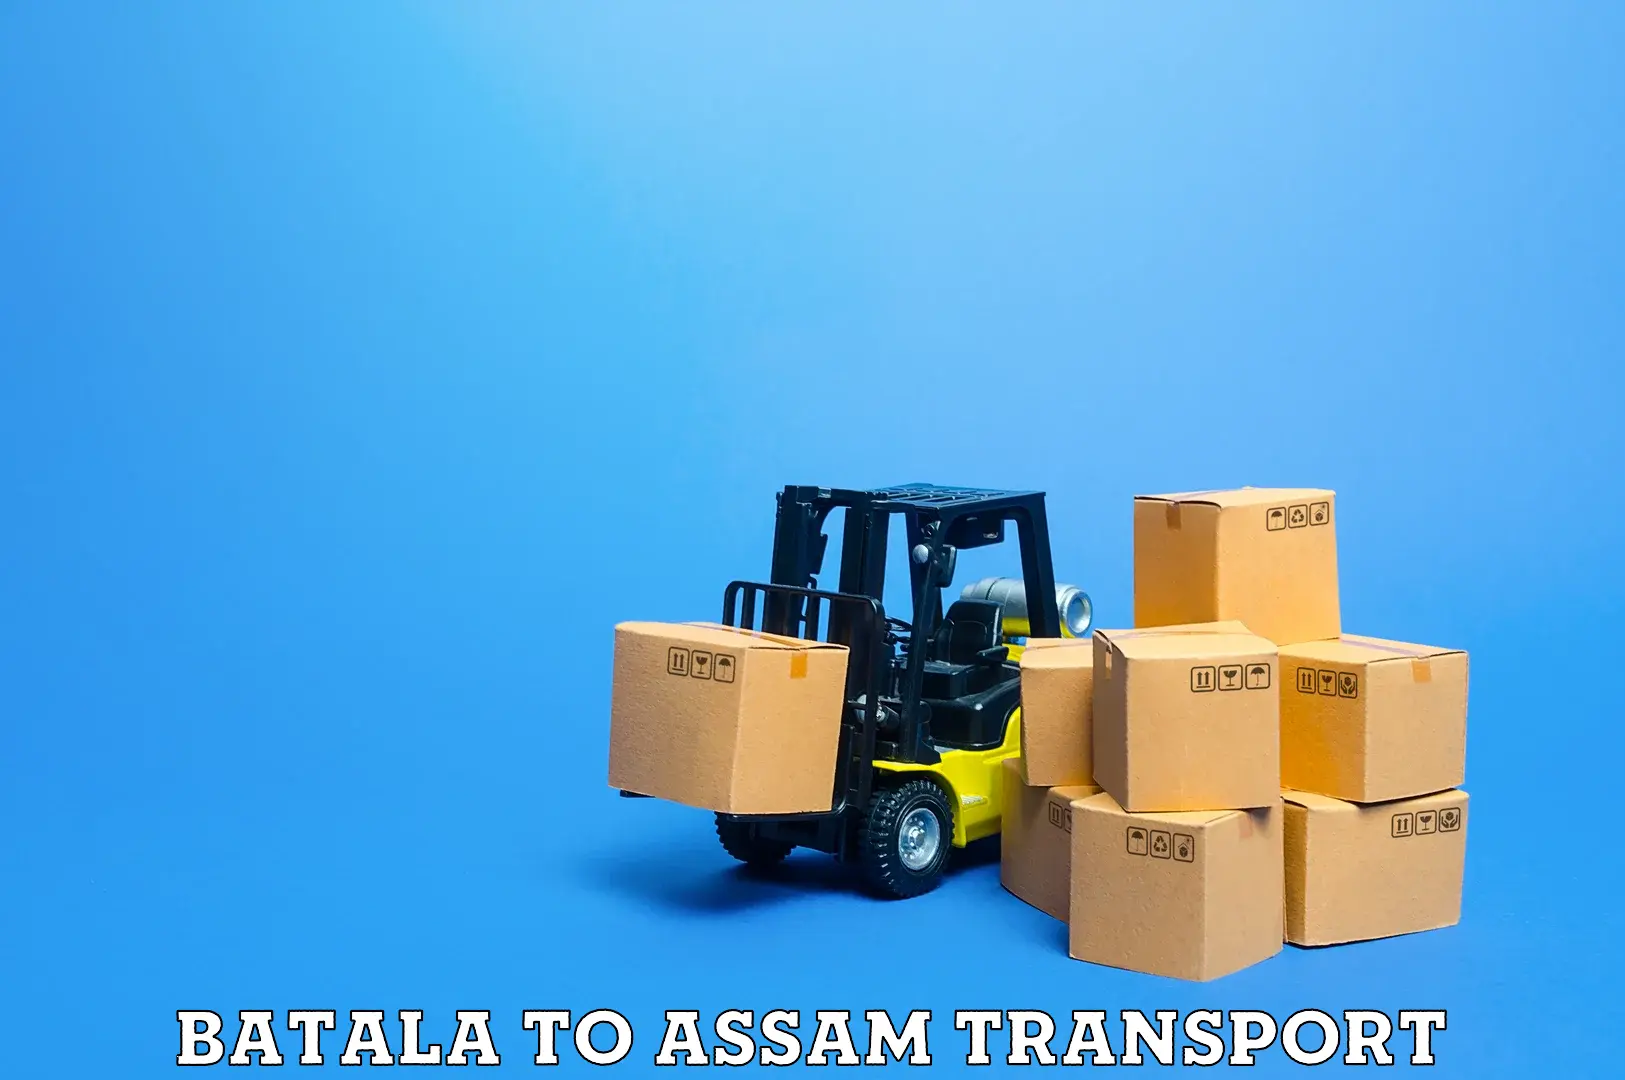 Bike shipping service Batala to Assam